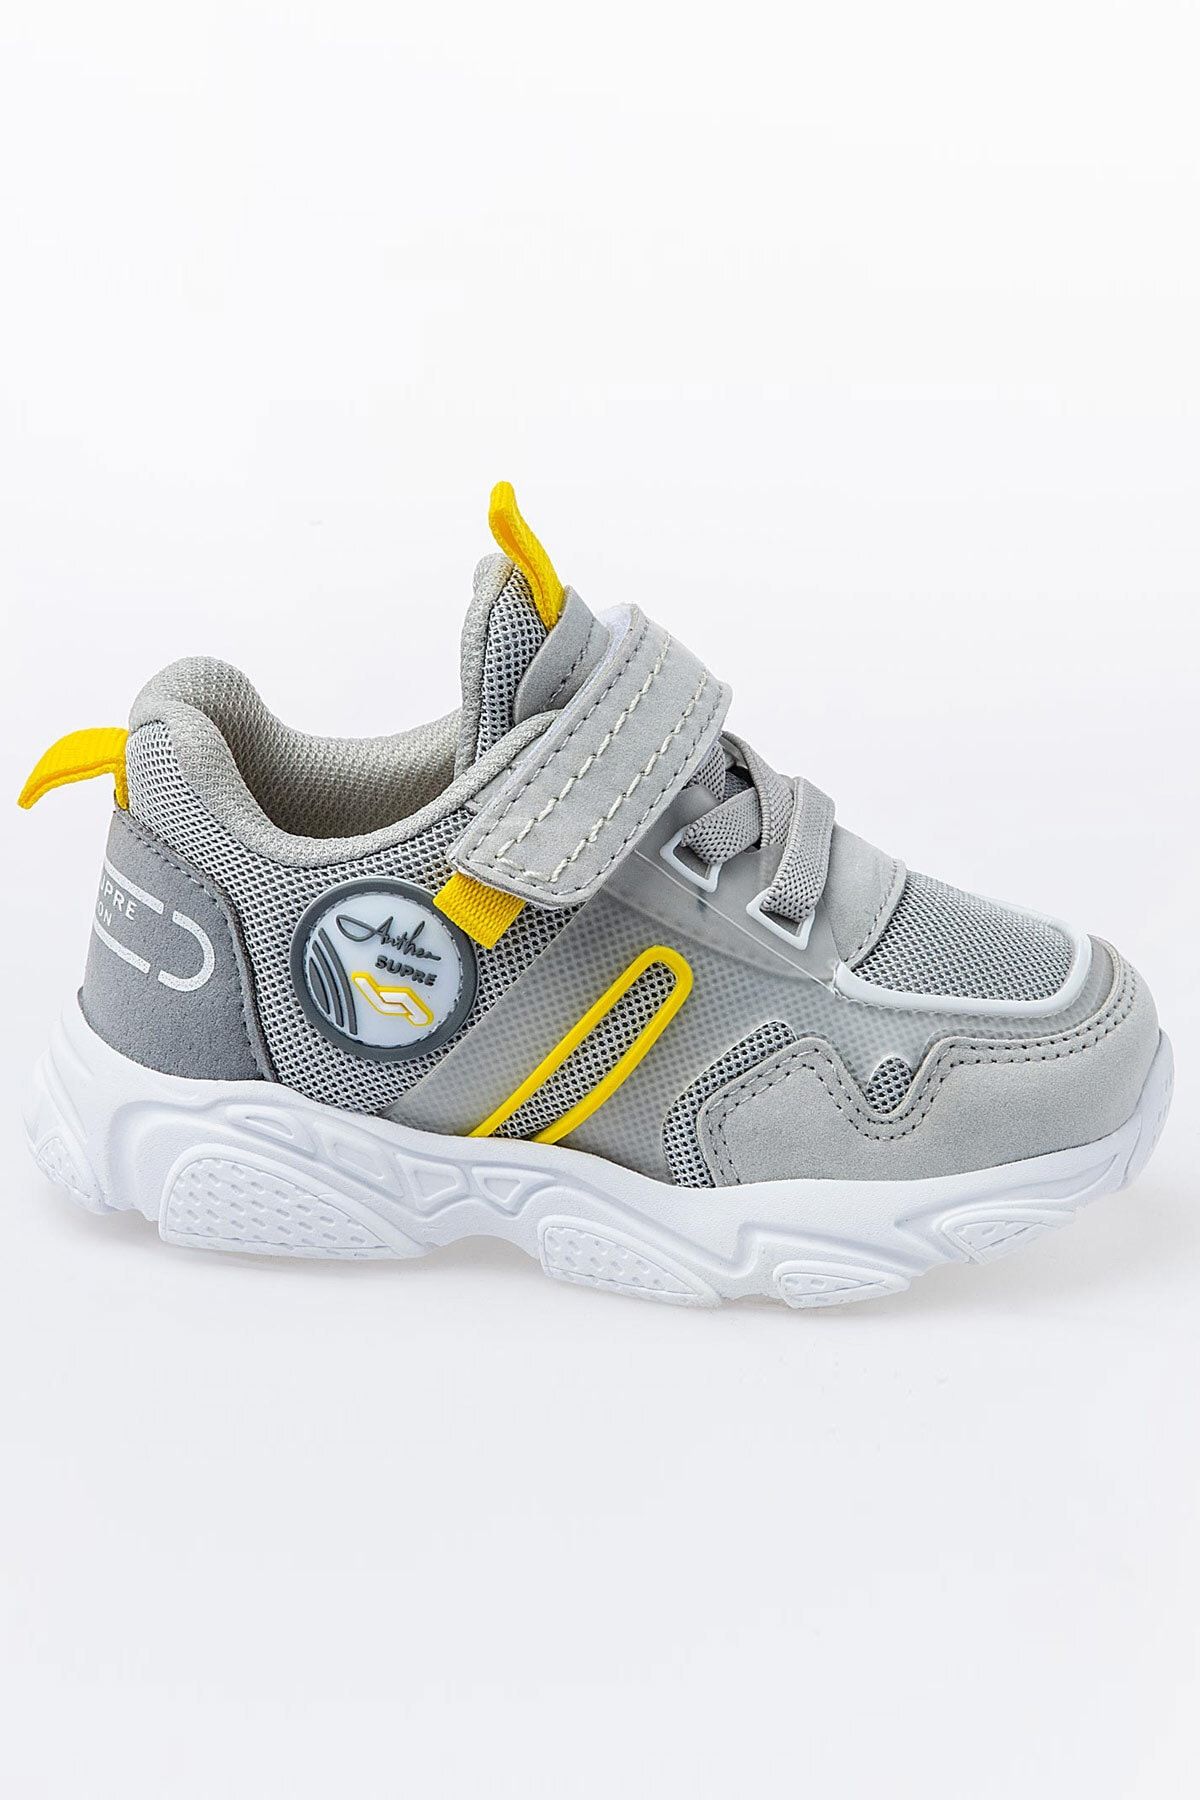 Jump 26182 Gri - Lacivert - Sarı Uniseks Çocuk Yazlık Bebek Günlük Rahat Yürüyüş Spor Ayakkabı